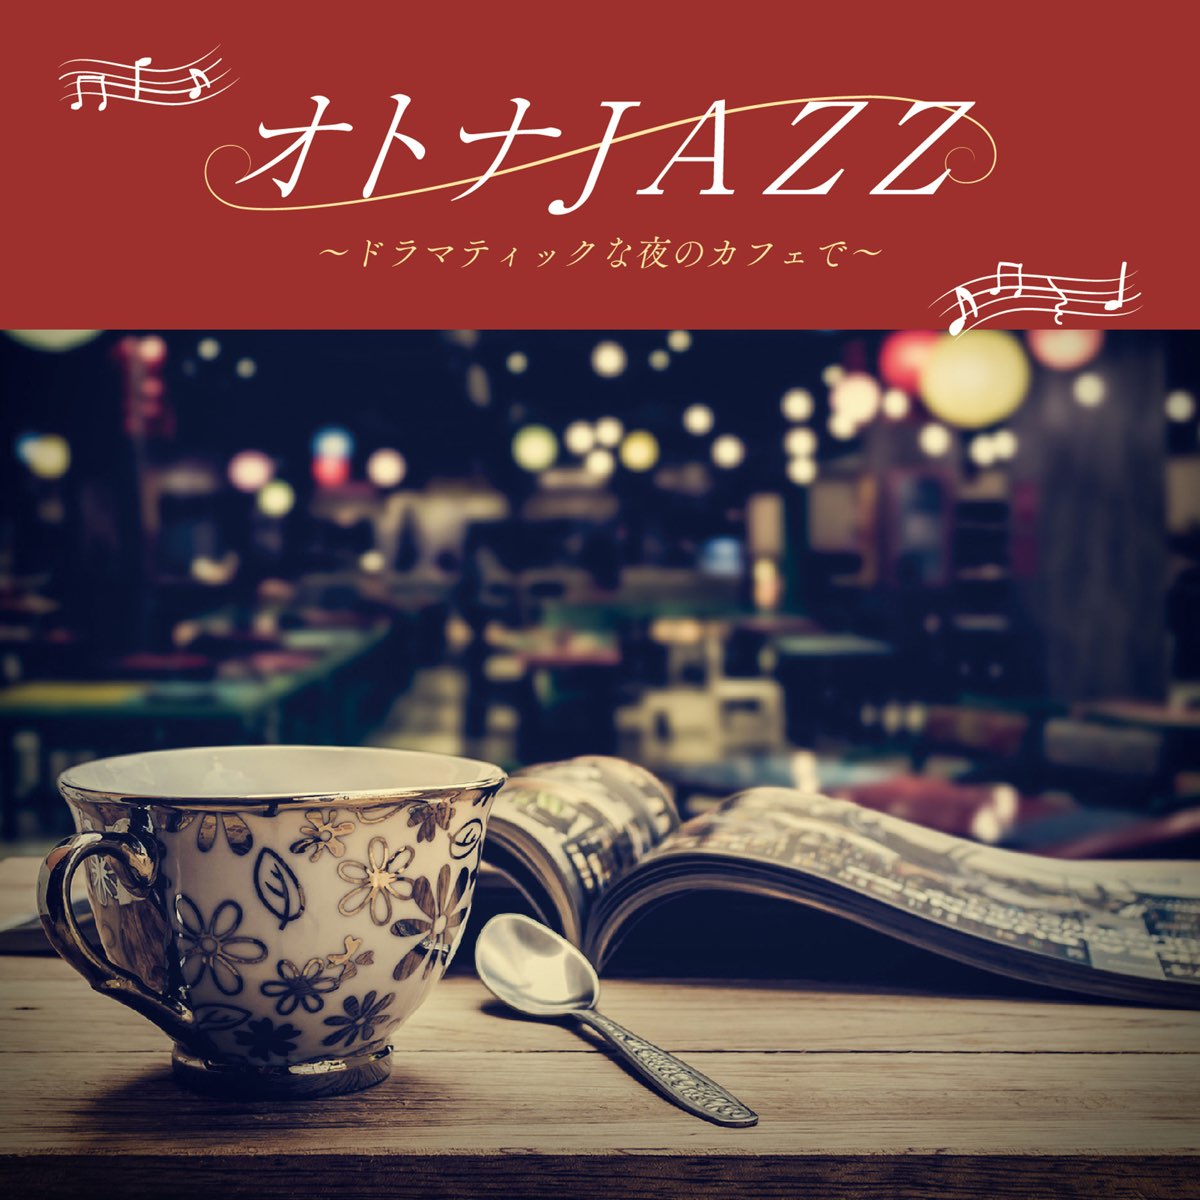 オトナJAZZ~ドラマティックな夜のカフェで~ - JAZZ PARADISEのアルバム